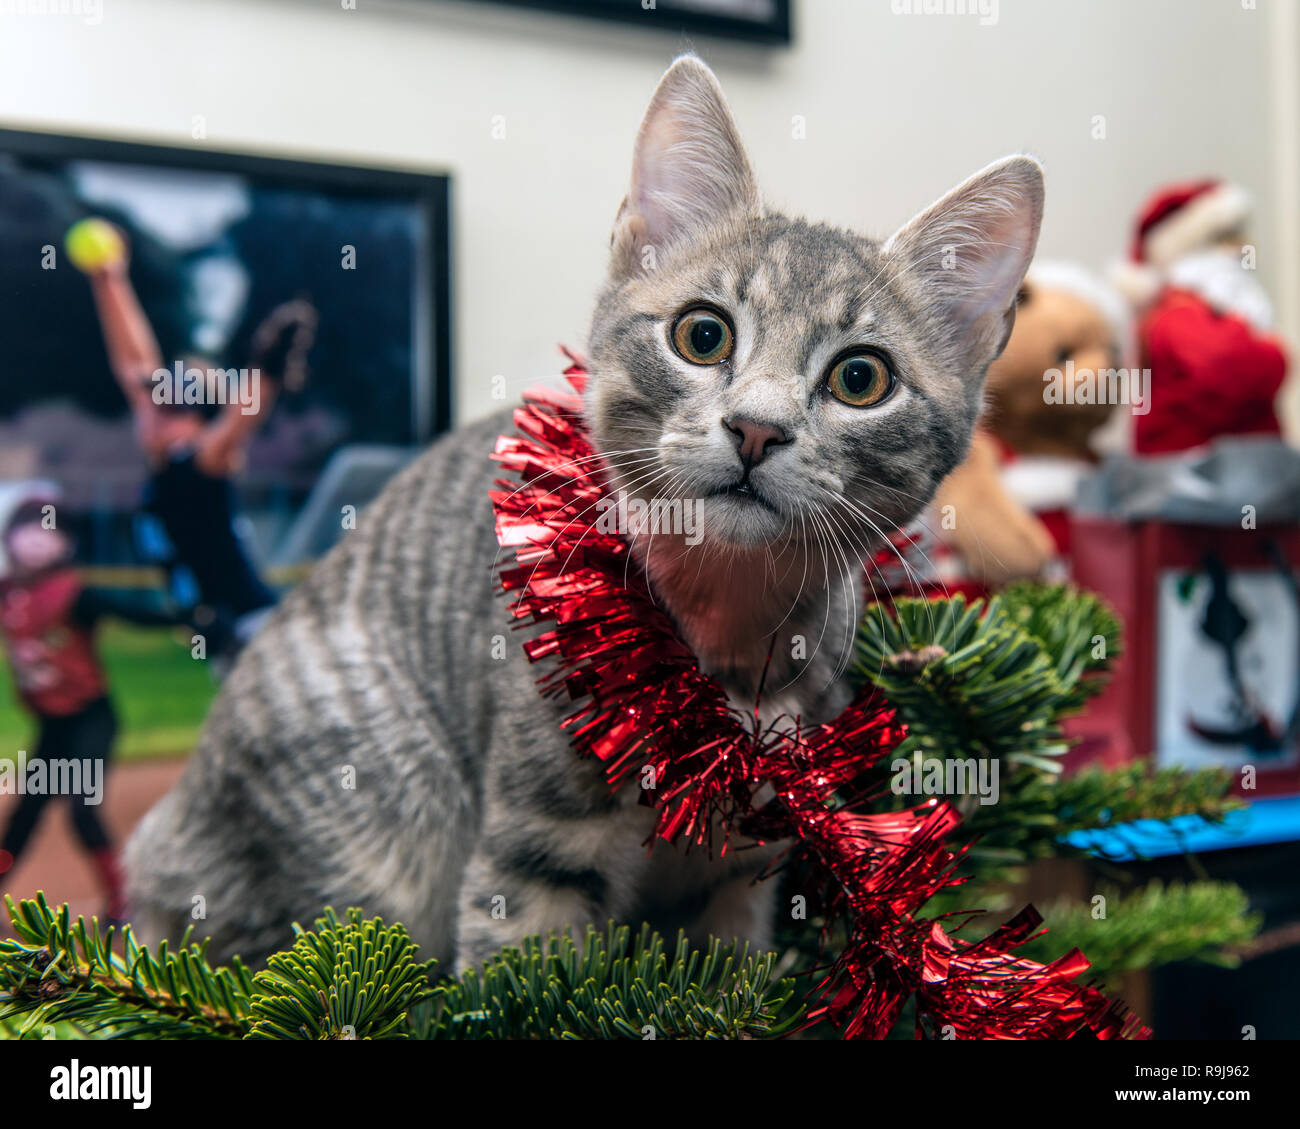 Silber und Grau tabby Kitten in der Girlande verwirrte beim Klettern der Weihnachtsbaum nach oben hat Blick auf den haarigen Gesicht überrascht. Stockfoto